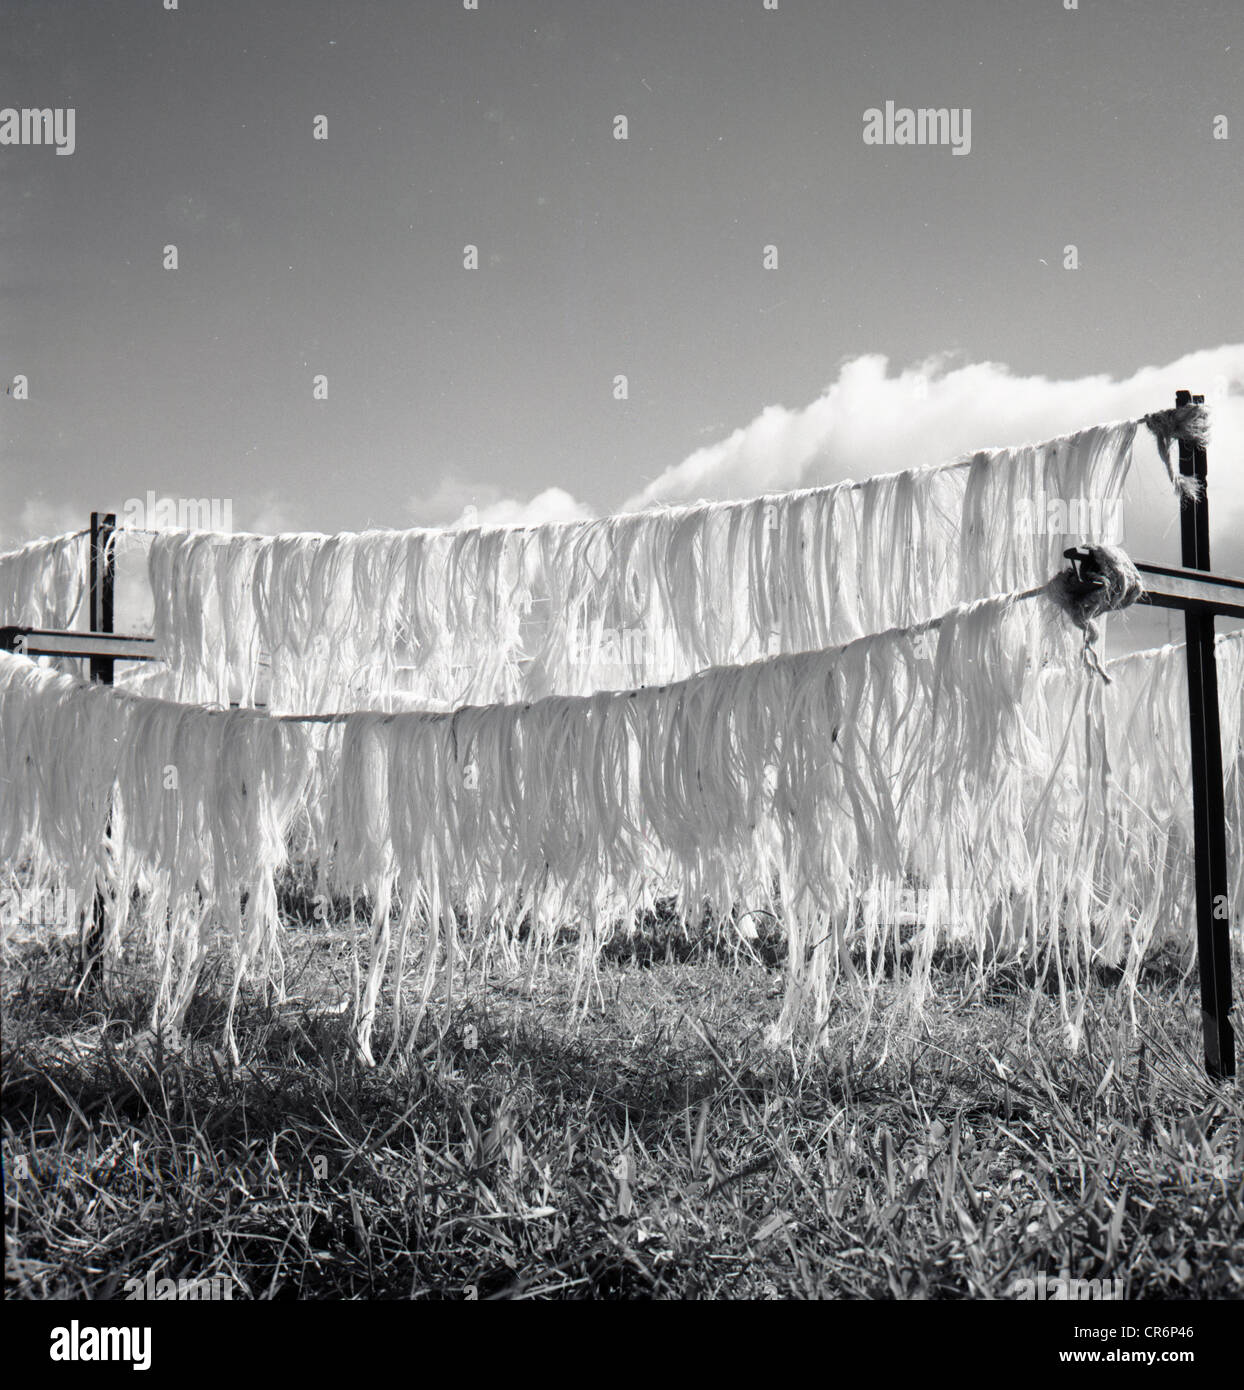 der 1950er Jahre. Tunesien. Historisches Bild der Streifen von Rohbaumwolle Trocknung auf Linien in einem Feld. Stockfoto